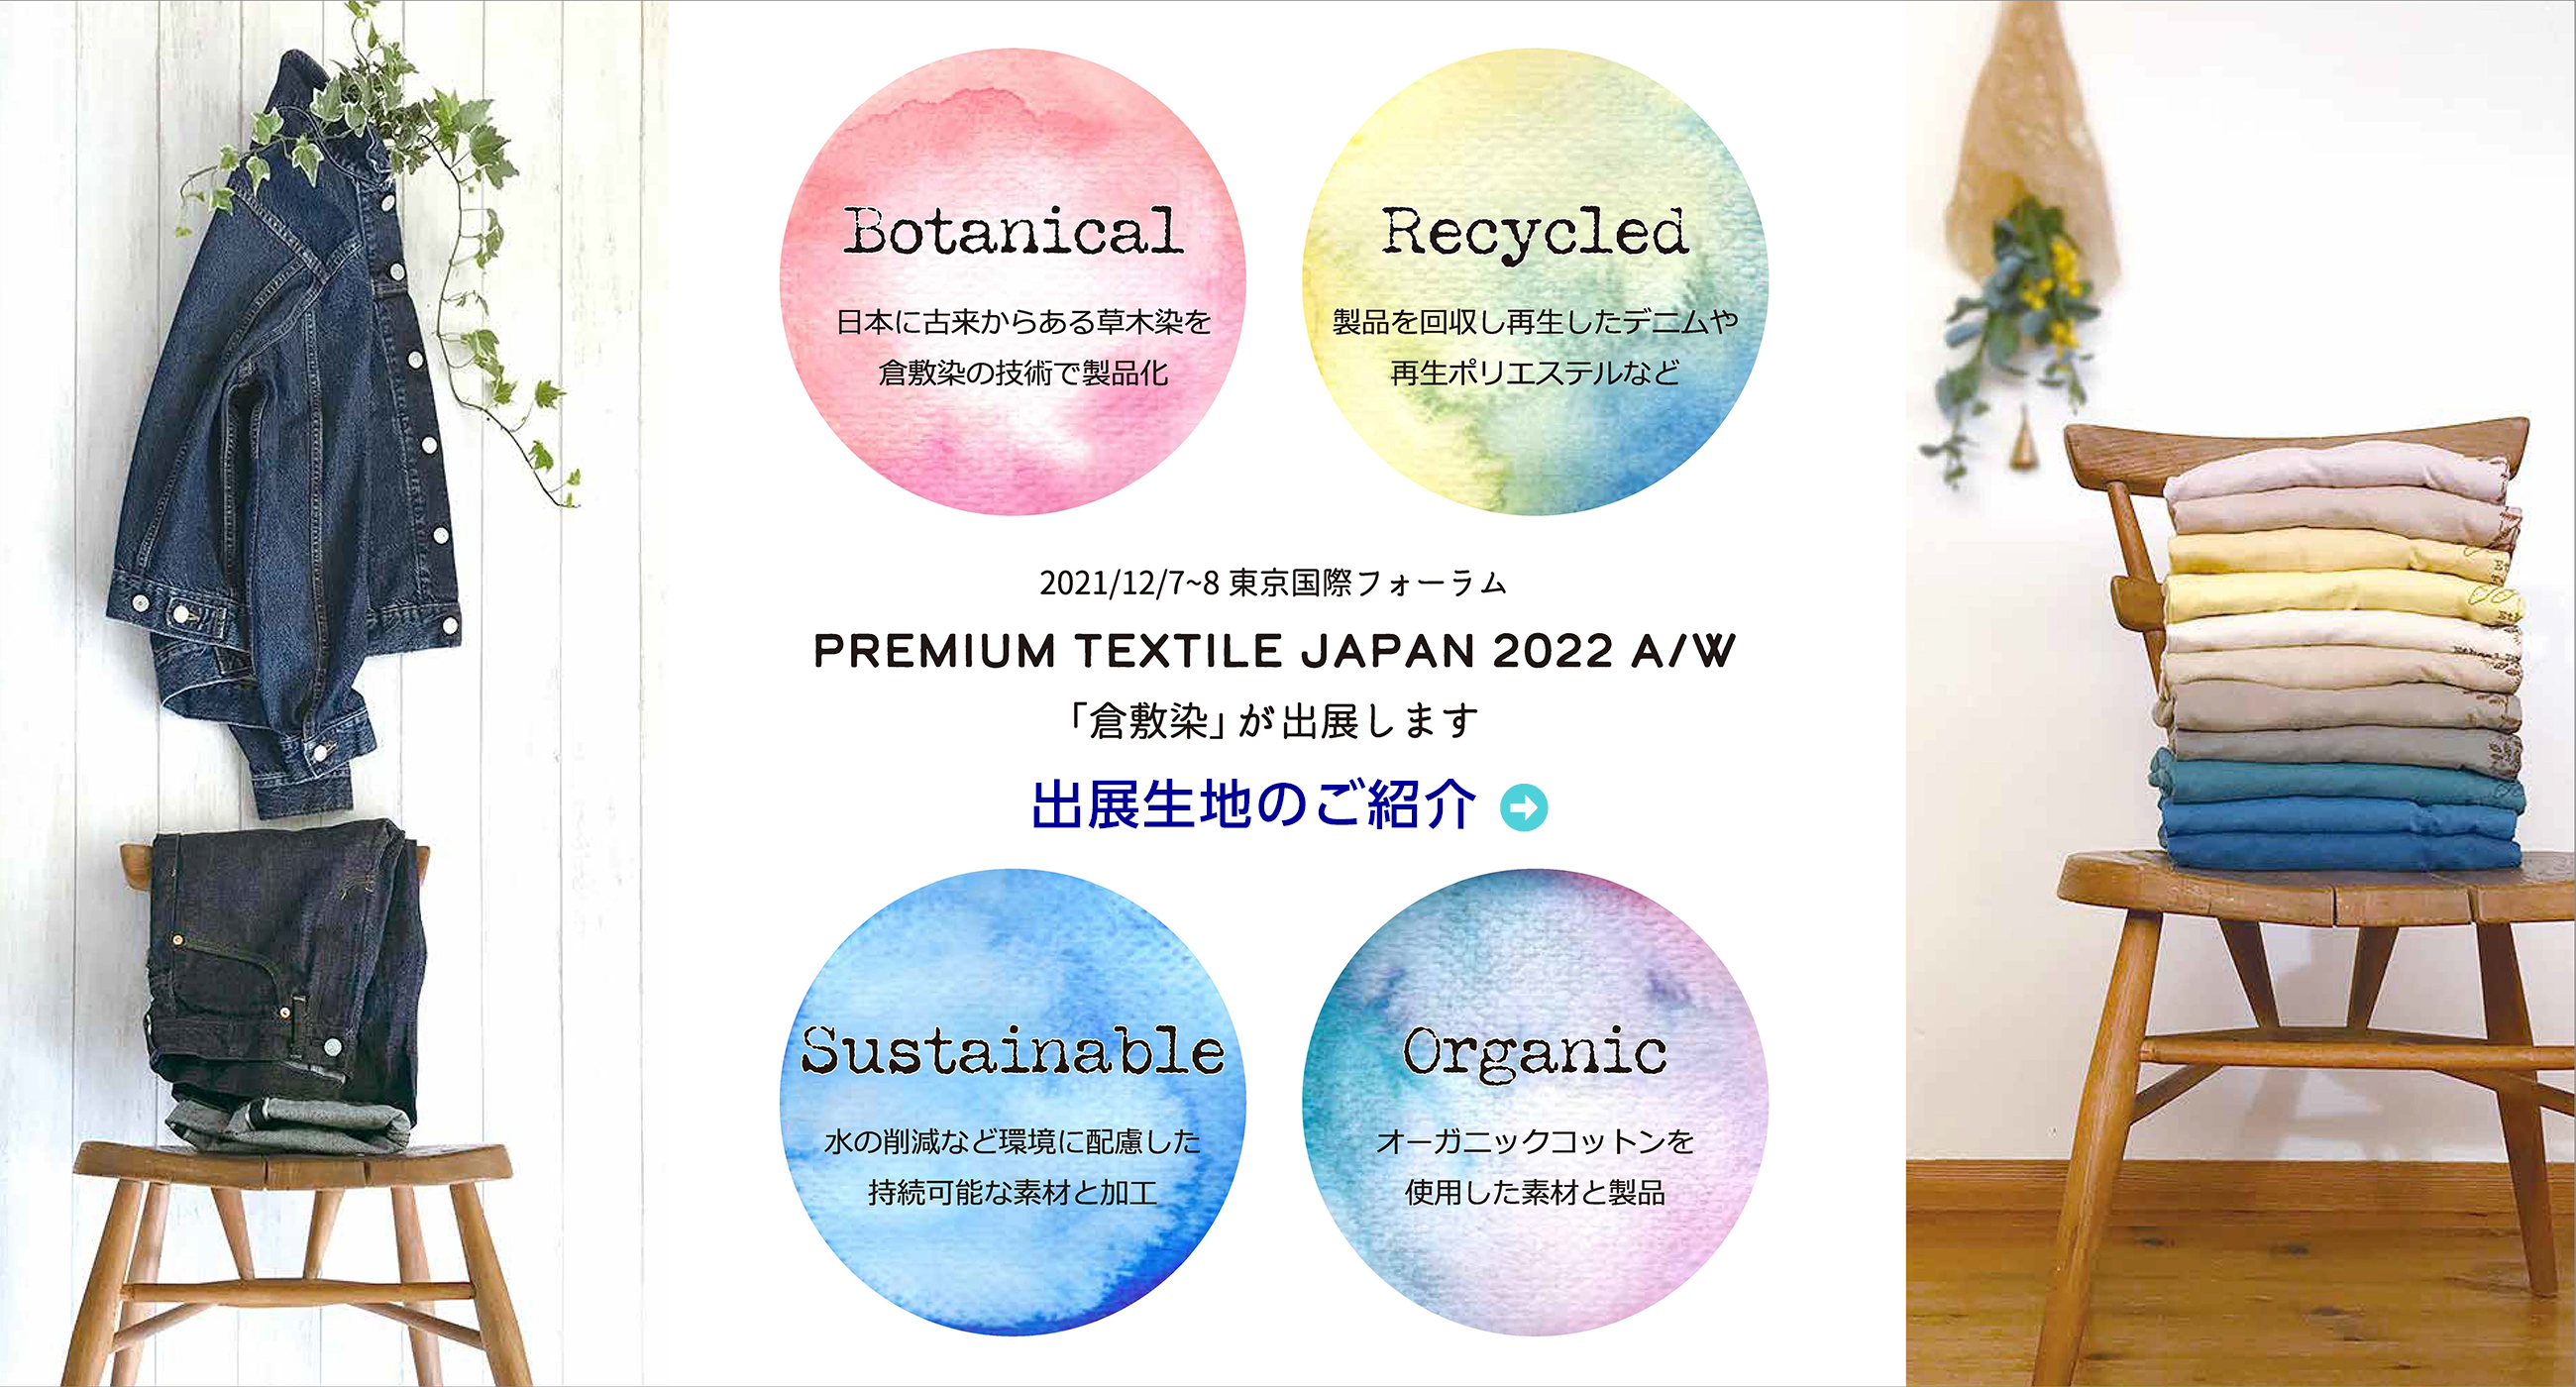 2021/12/7~8 東京国際フォーラム PREMIUM TEXTILE JAPAN 2022 A/W 「倉敷染」が出展します